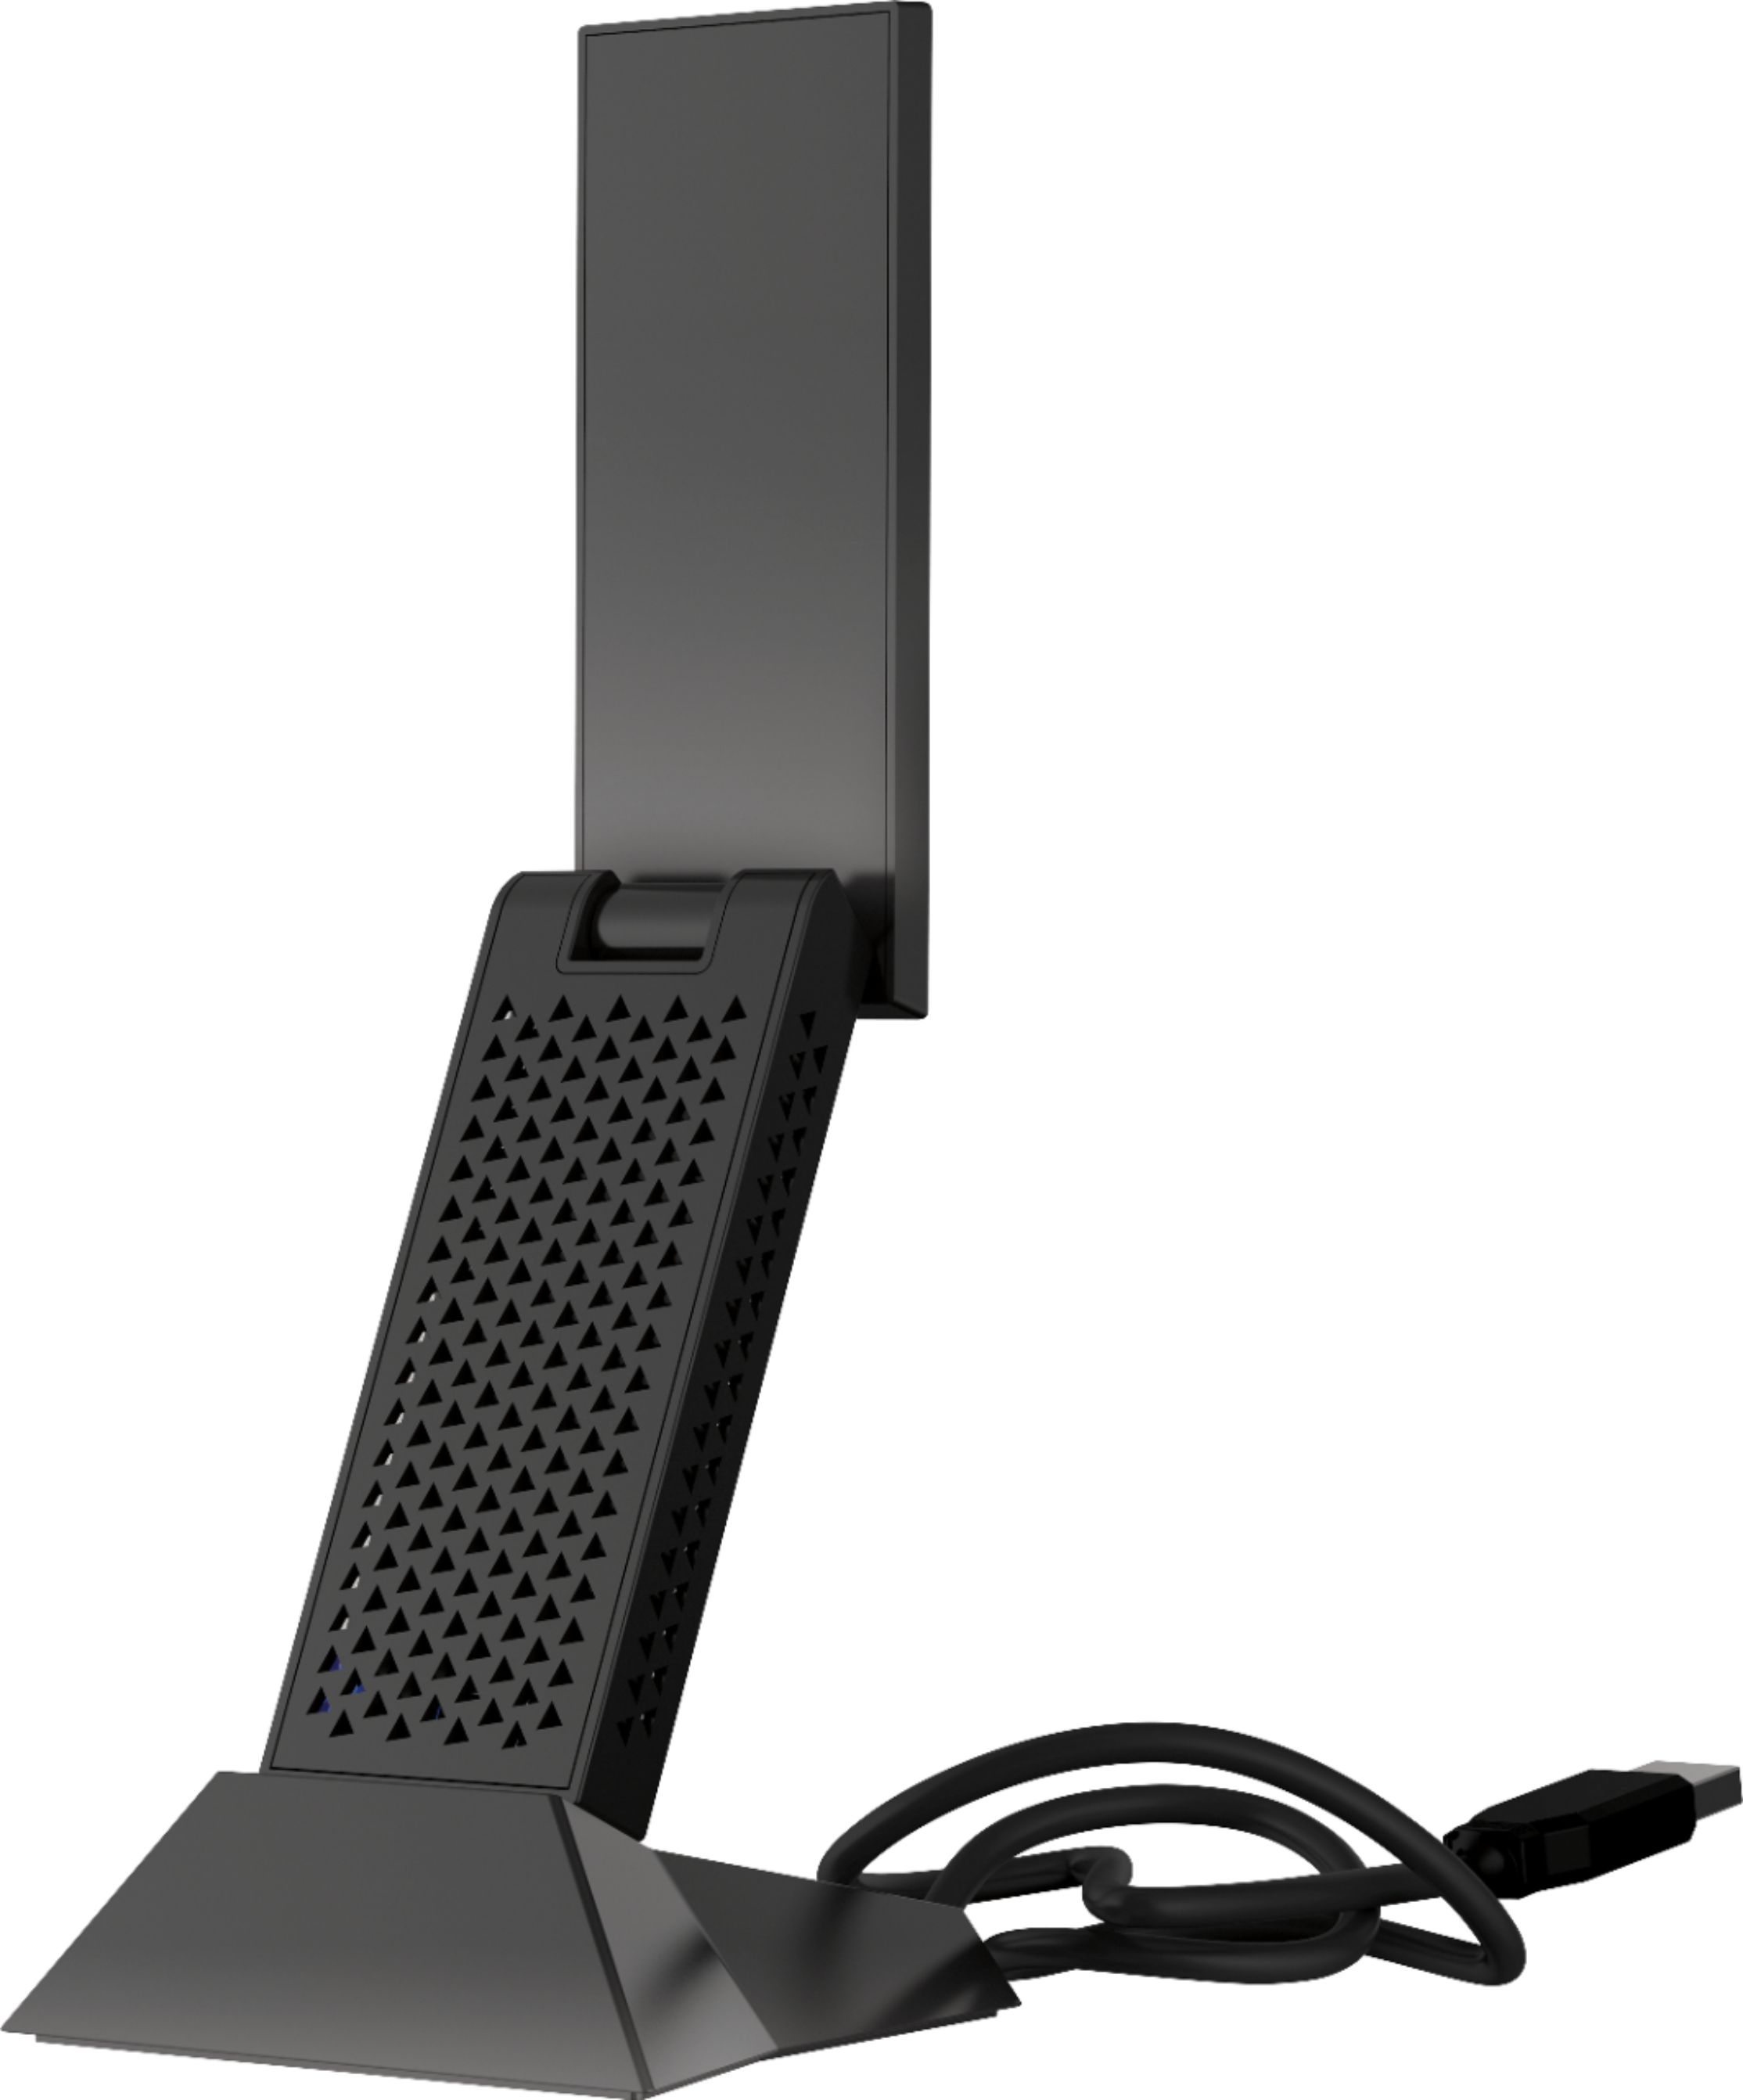 NETGEAR Nighthawk AC1900 Dual-Band WiFi USB 3.0 Adapter Black A7000-10000S Best Buy